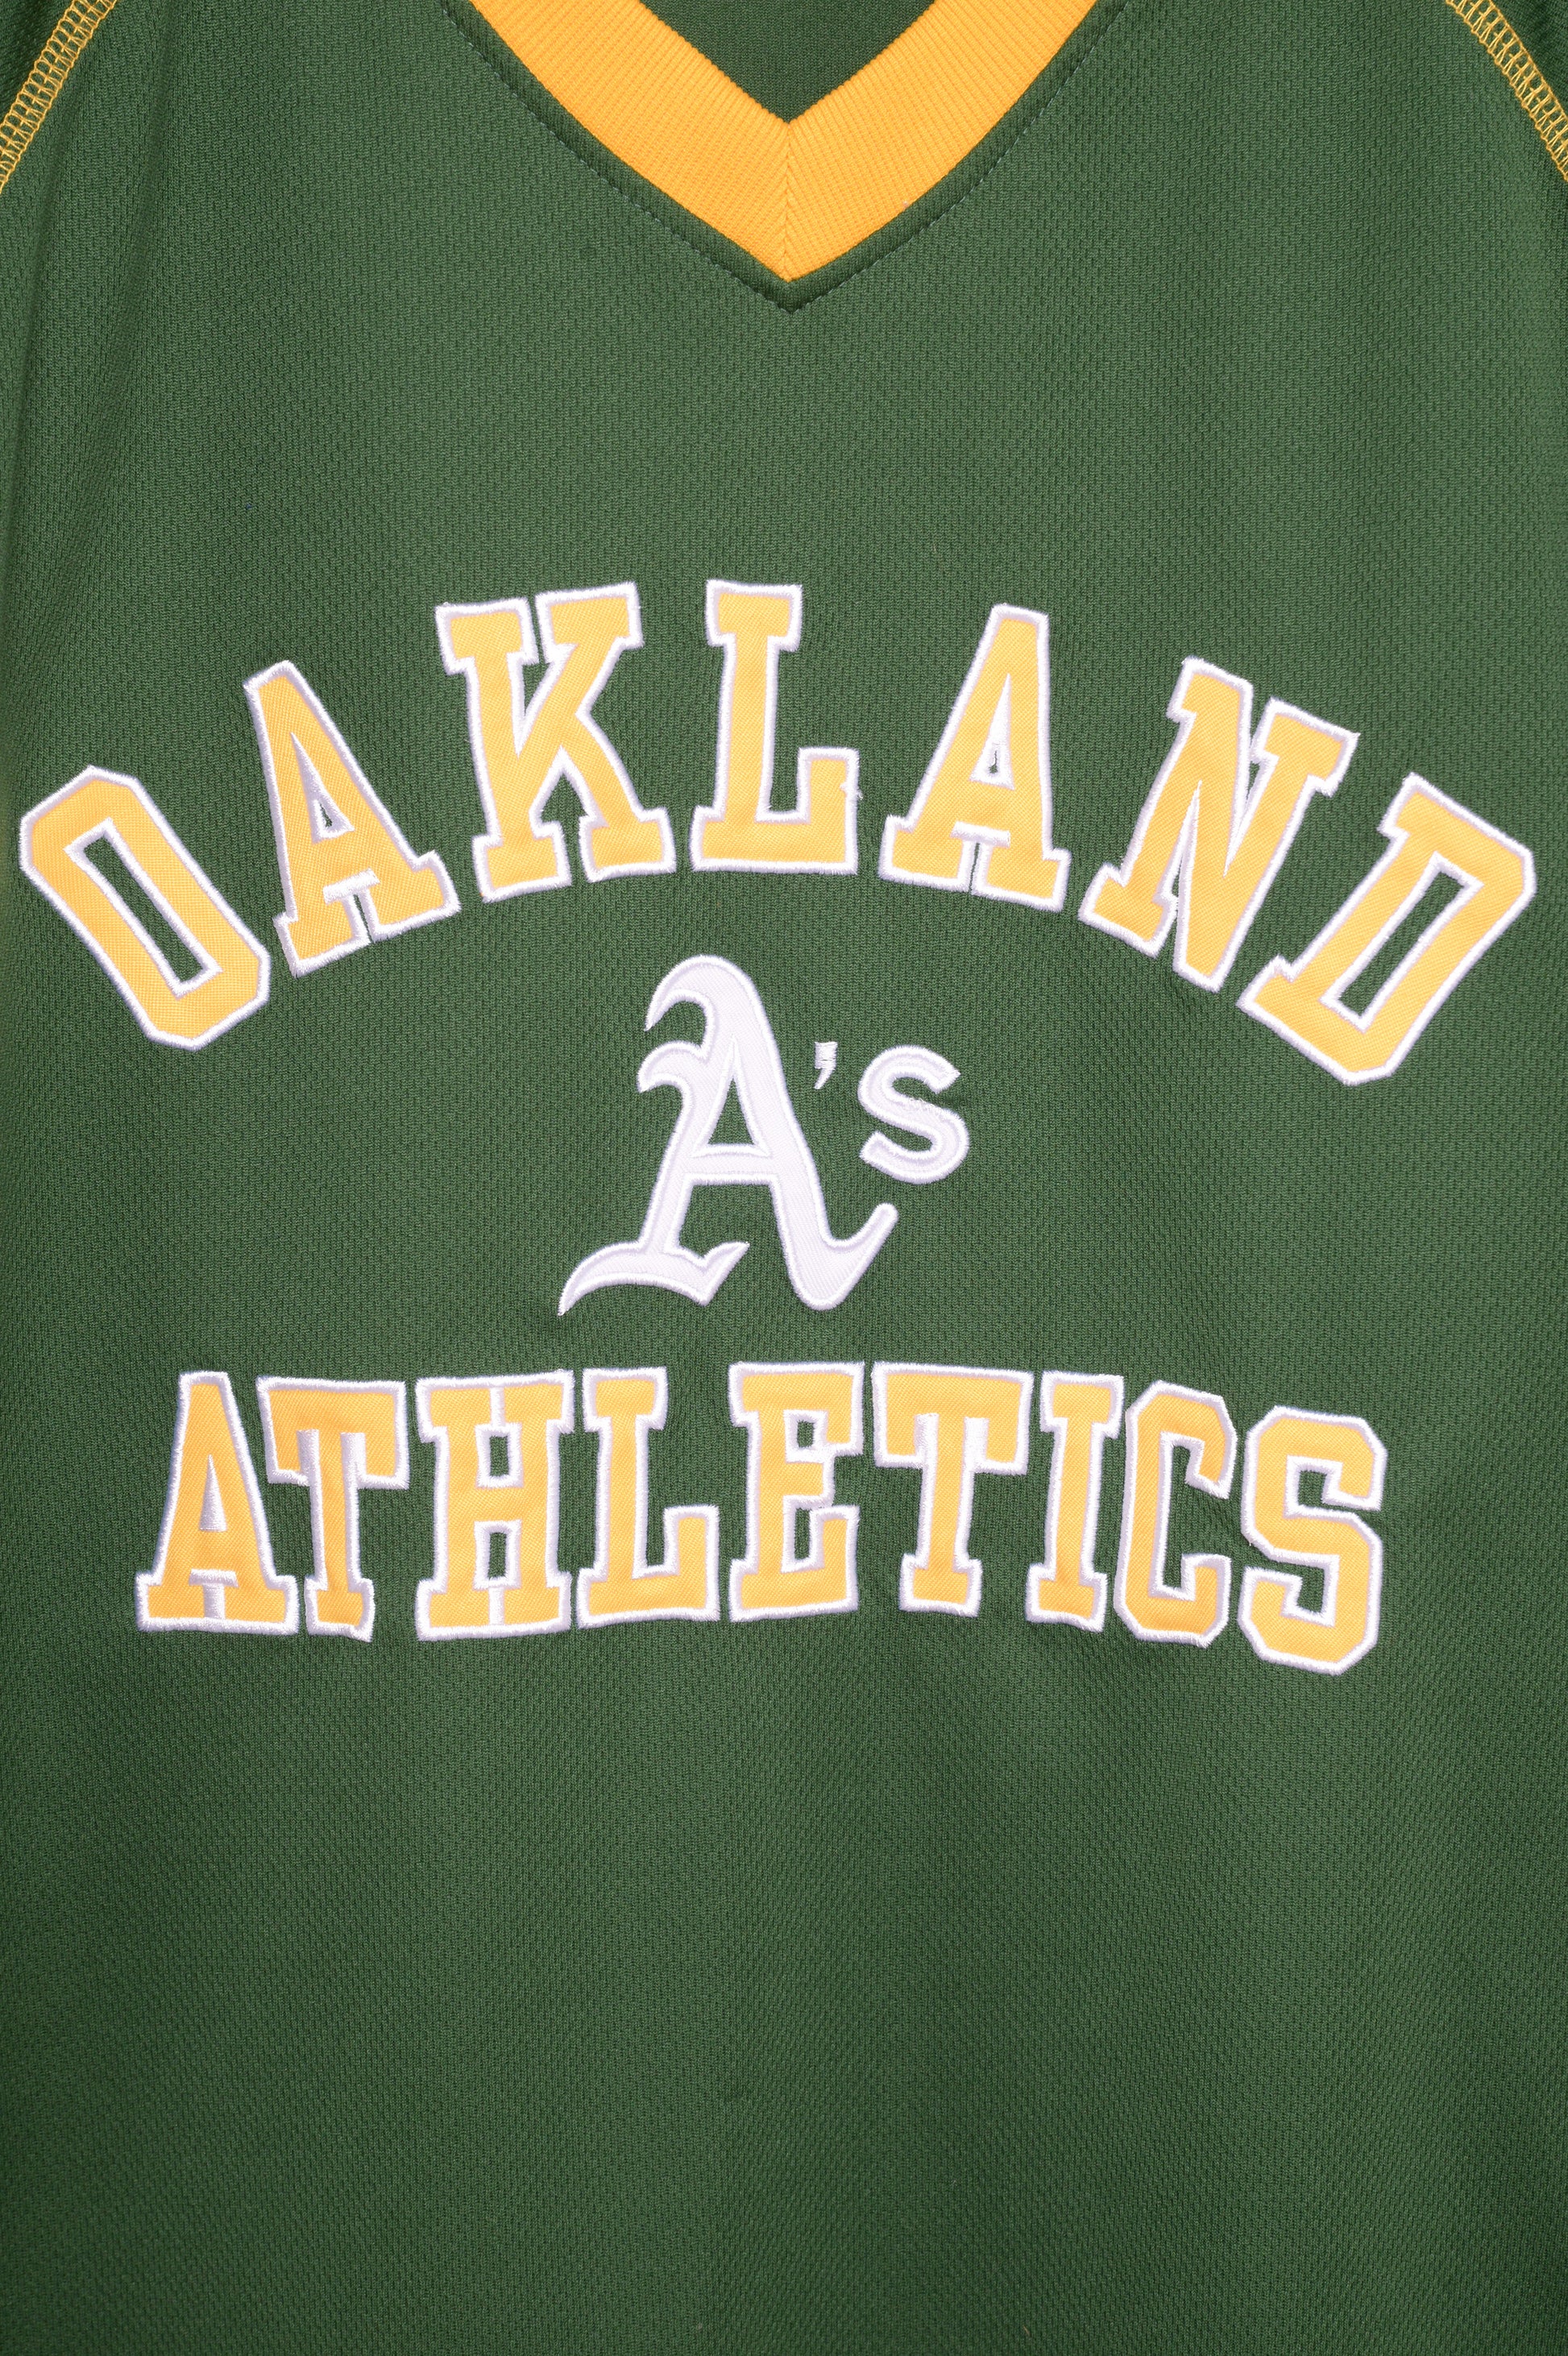 XL) Vintage Oakland Athletics Jersey